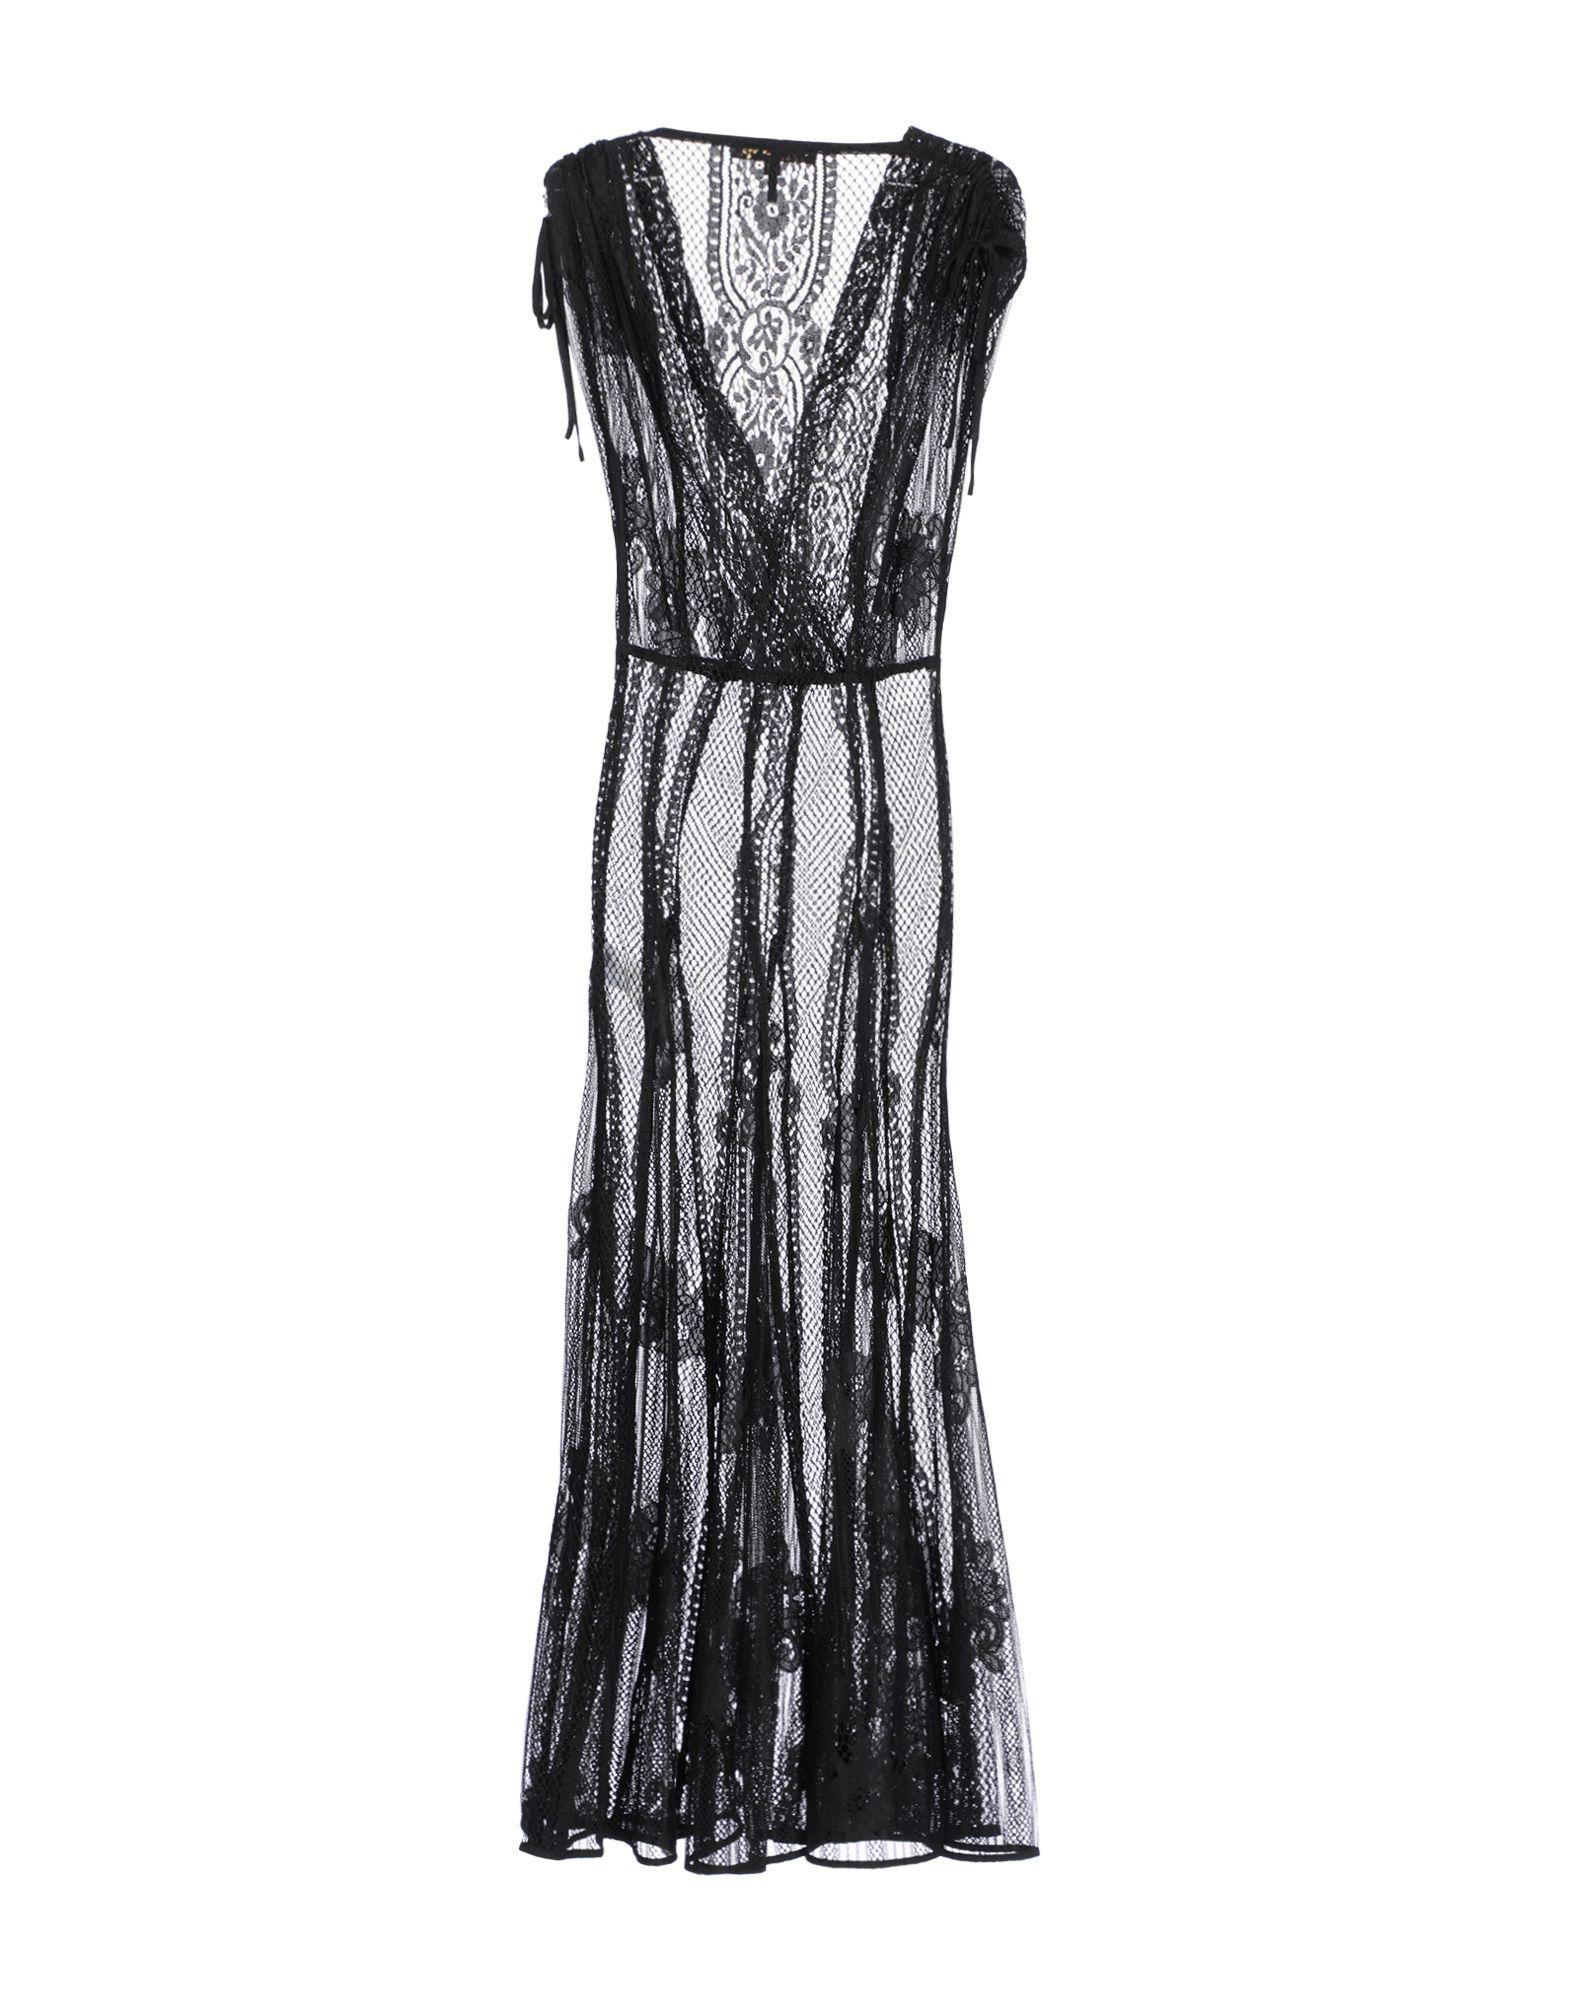 Maje Lace Long Dress in Black - Lyst